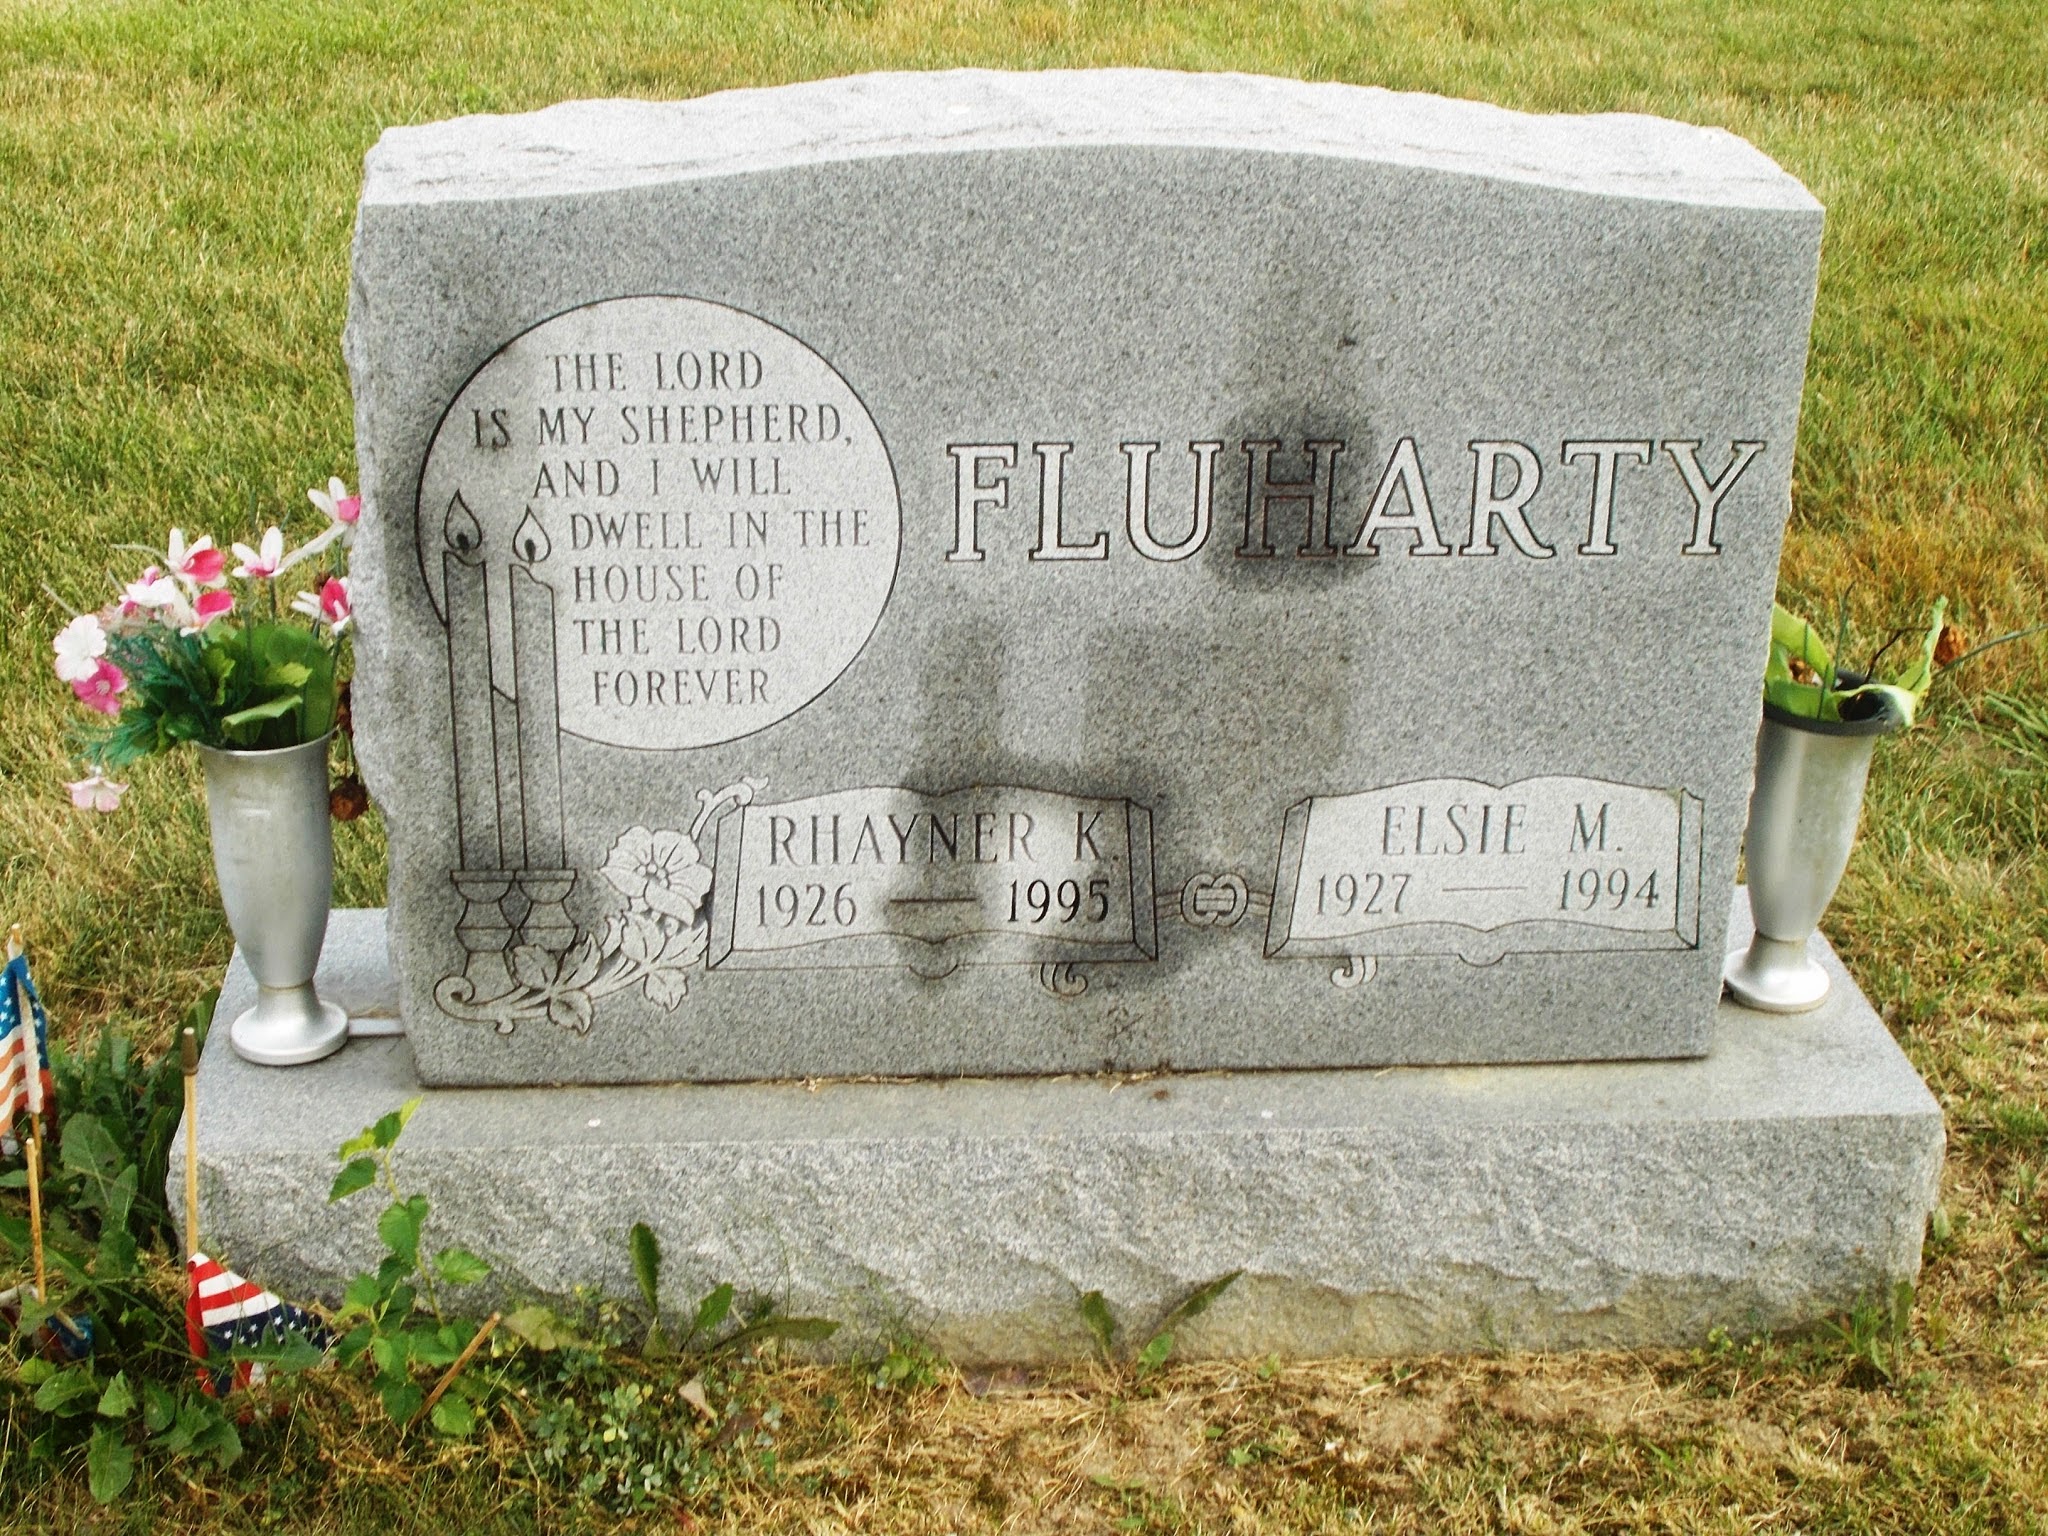 Elsie M Fluharty